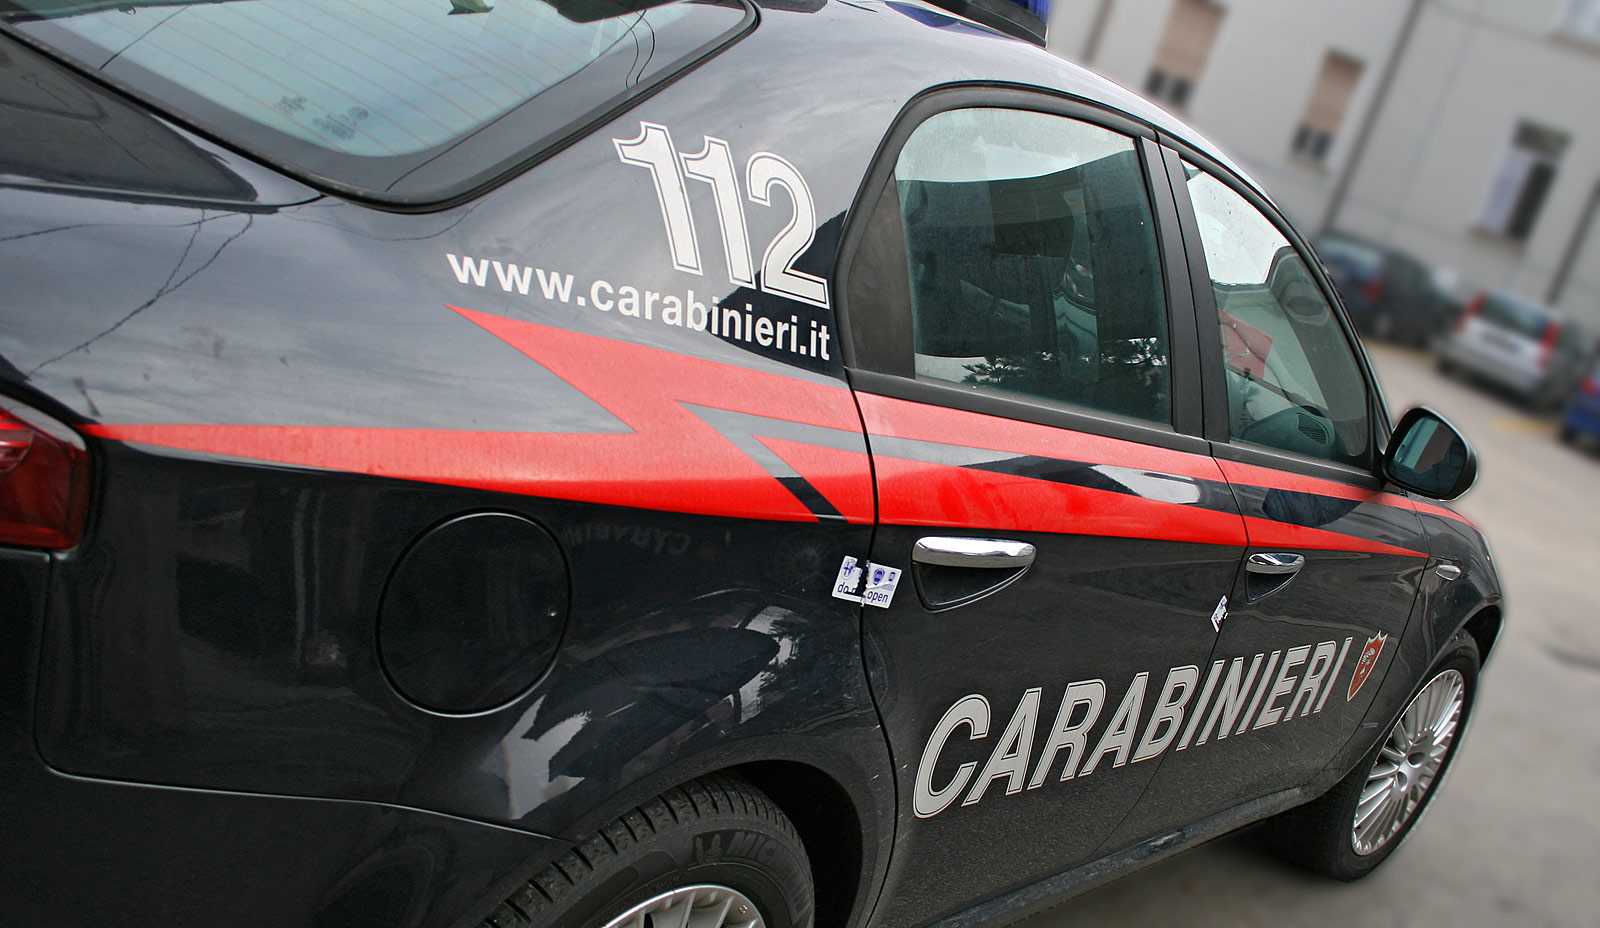 Terrorismo: blitz carabinieri, arrestato tunisino che aveva giurato fedeltà a IS